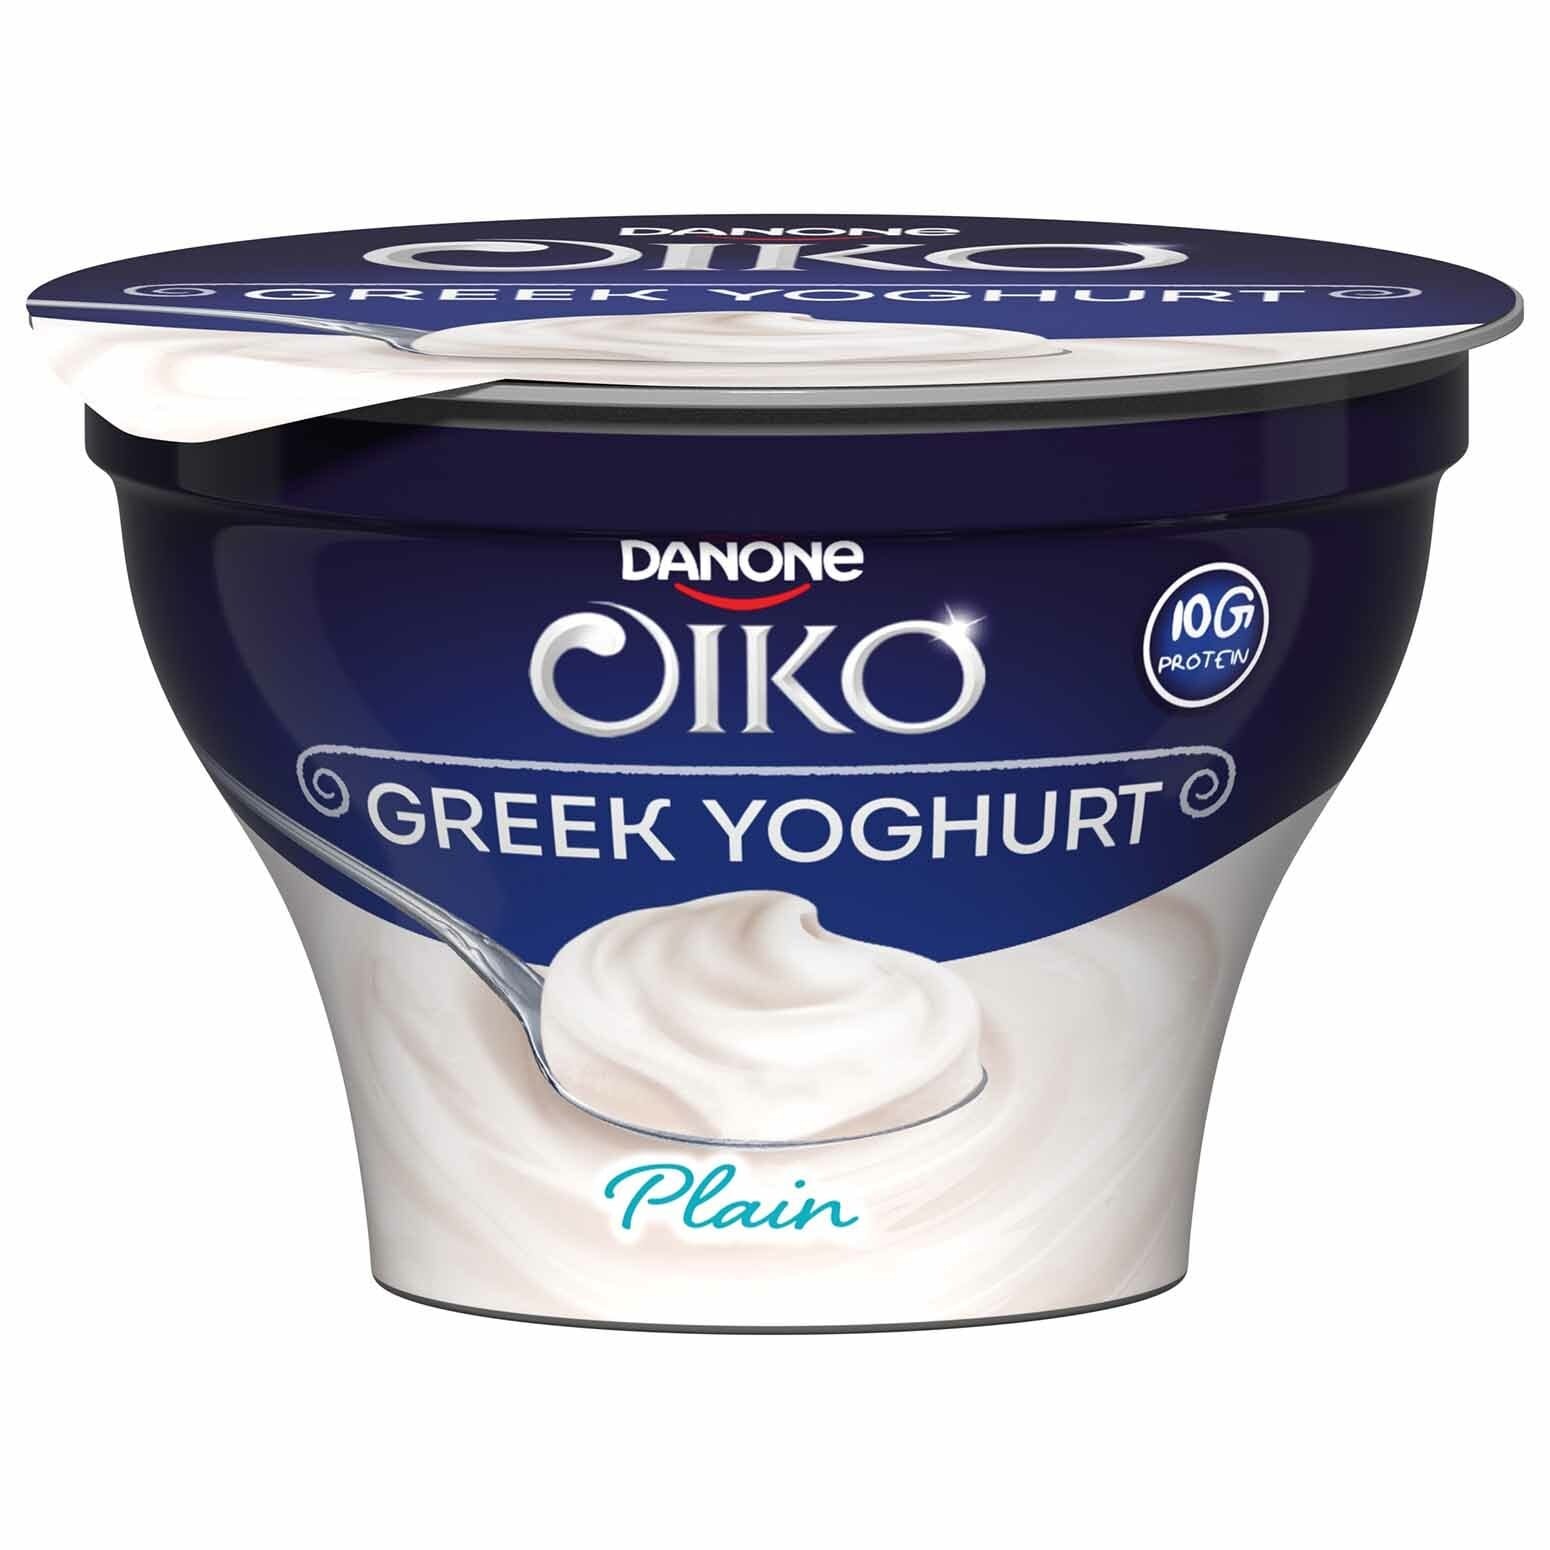 Lactel greek yogurt